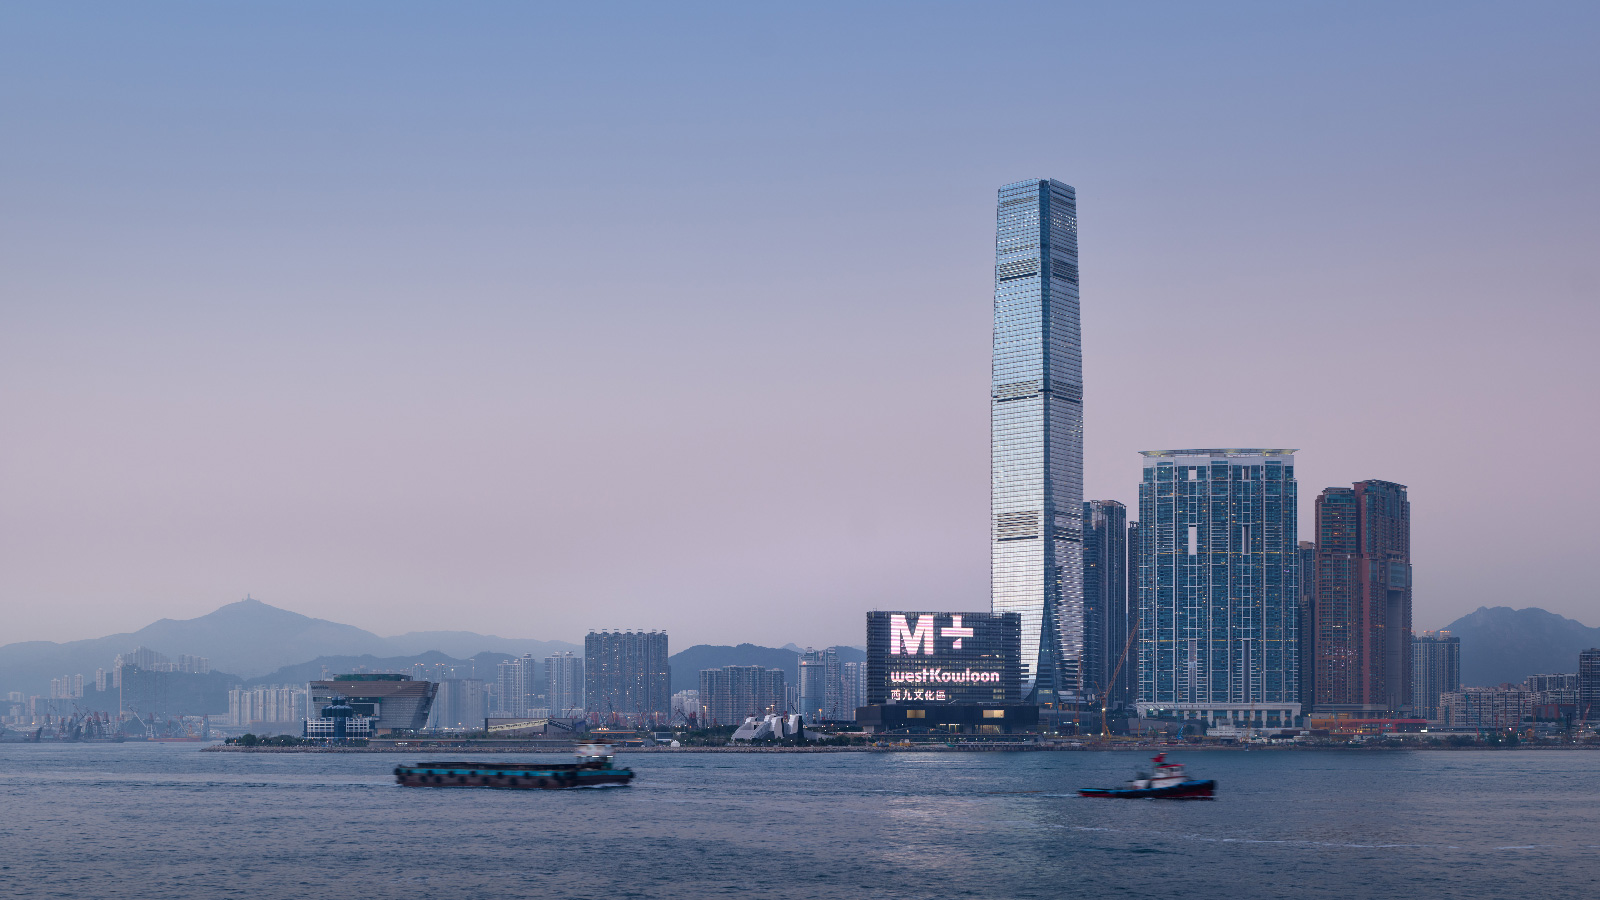 Mặt tiền bảo tàng M+ là một trong những mặt tiền truyền thông lớn nhất trên thế giới và là một trong những địa danh mang tính biểu tượng của Hồng Kông.